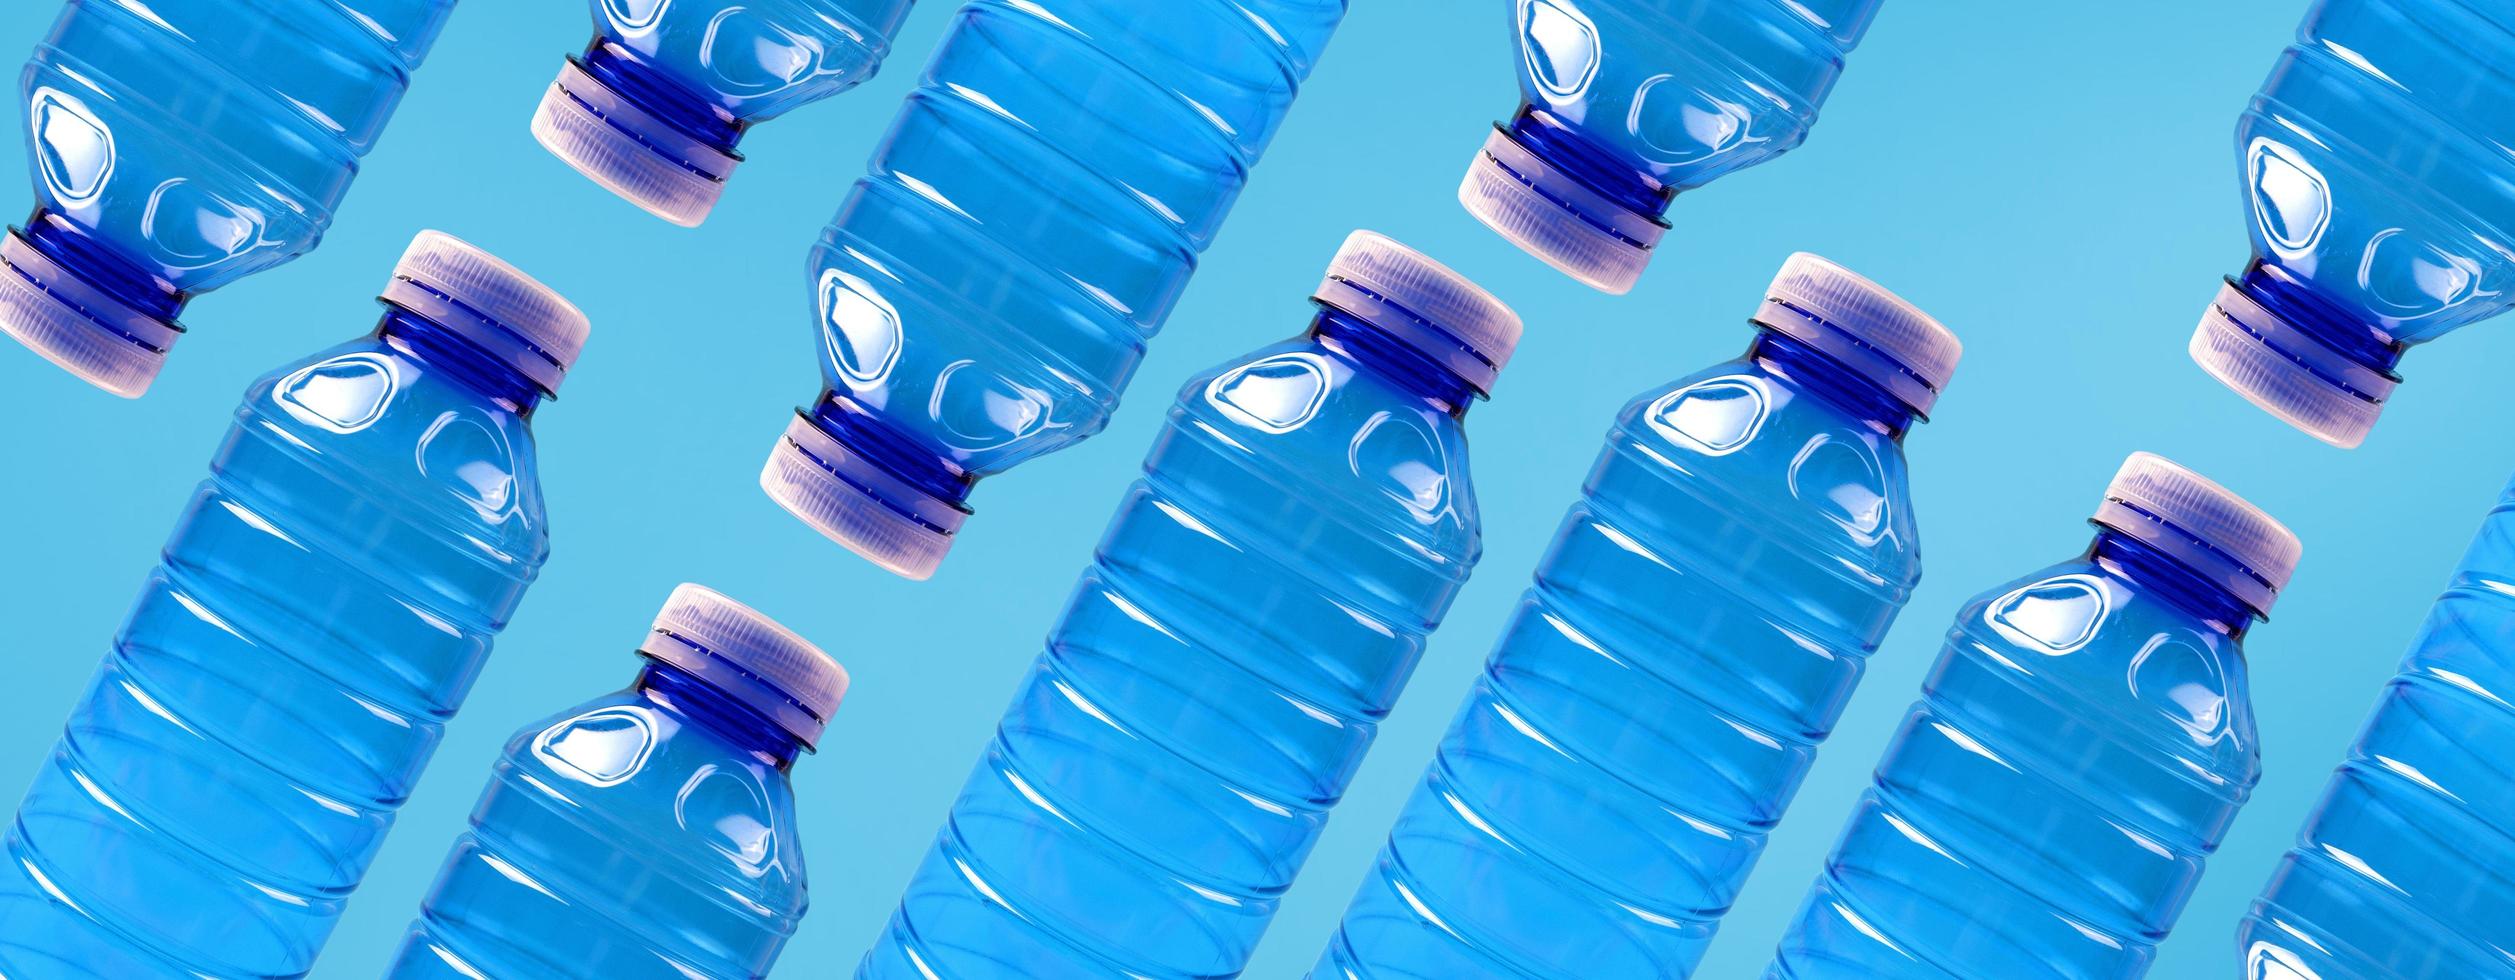 eco-banner. concept van milieubescherming en scheiding van plastic afval. plastic flessen op een blauwe achtergrond. foto